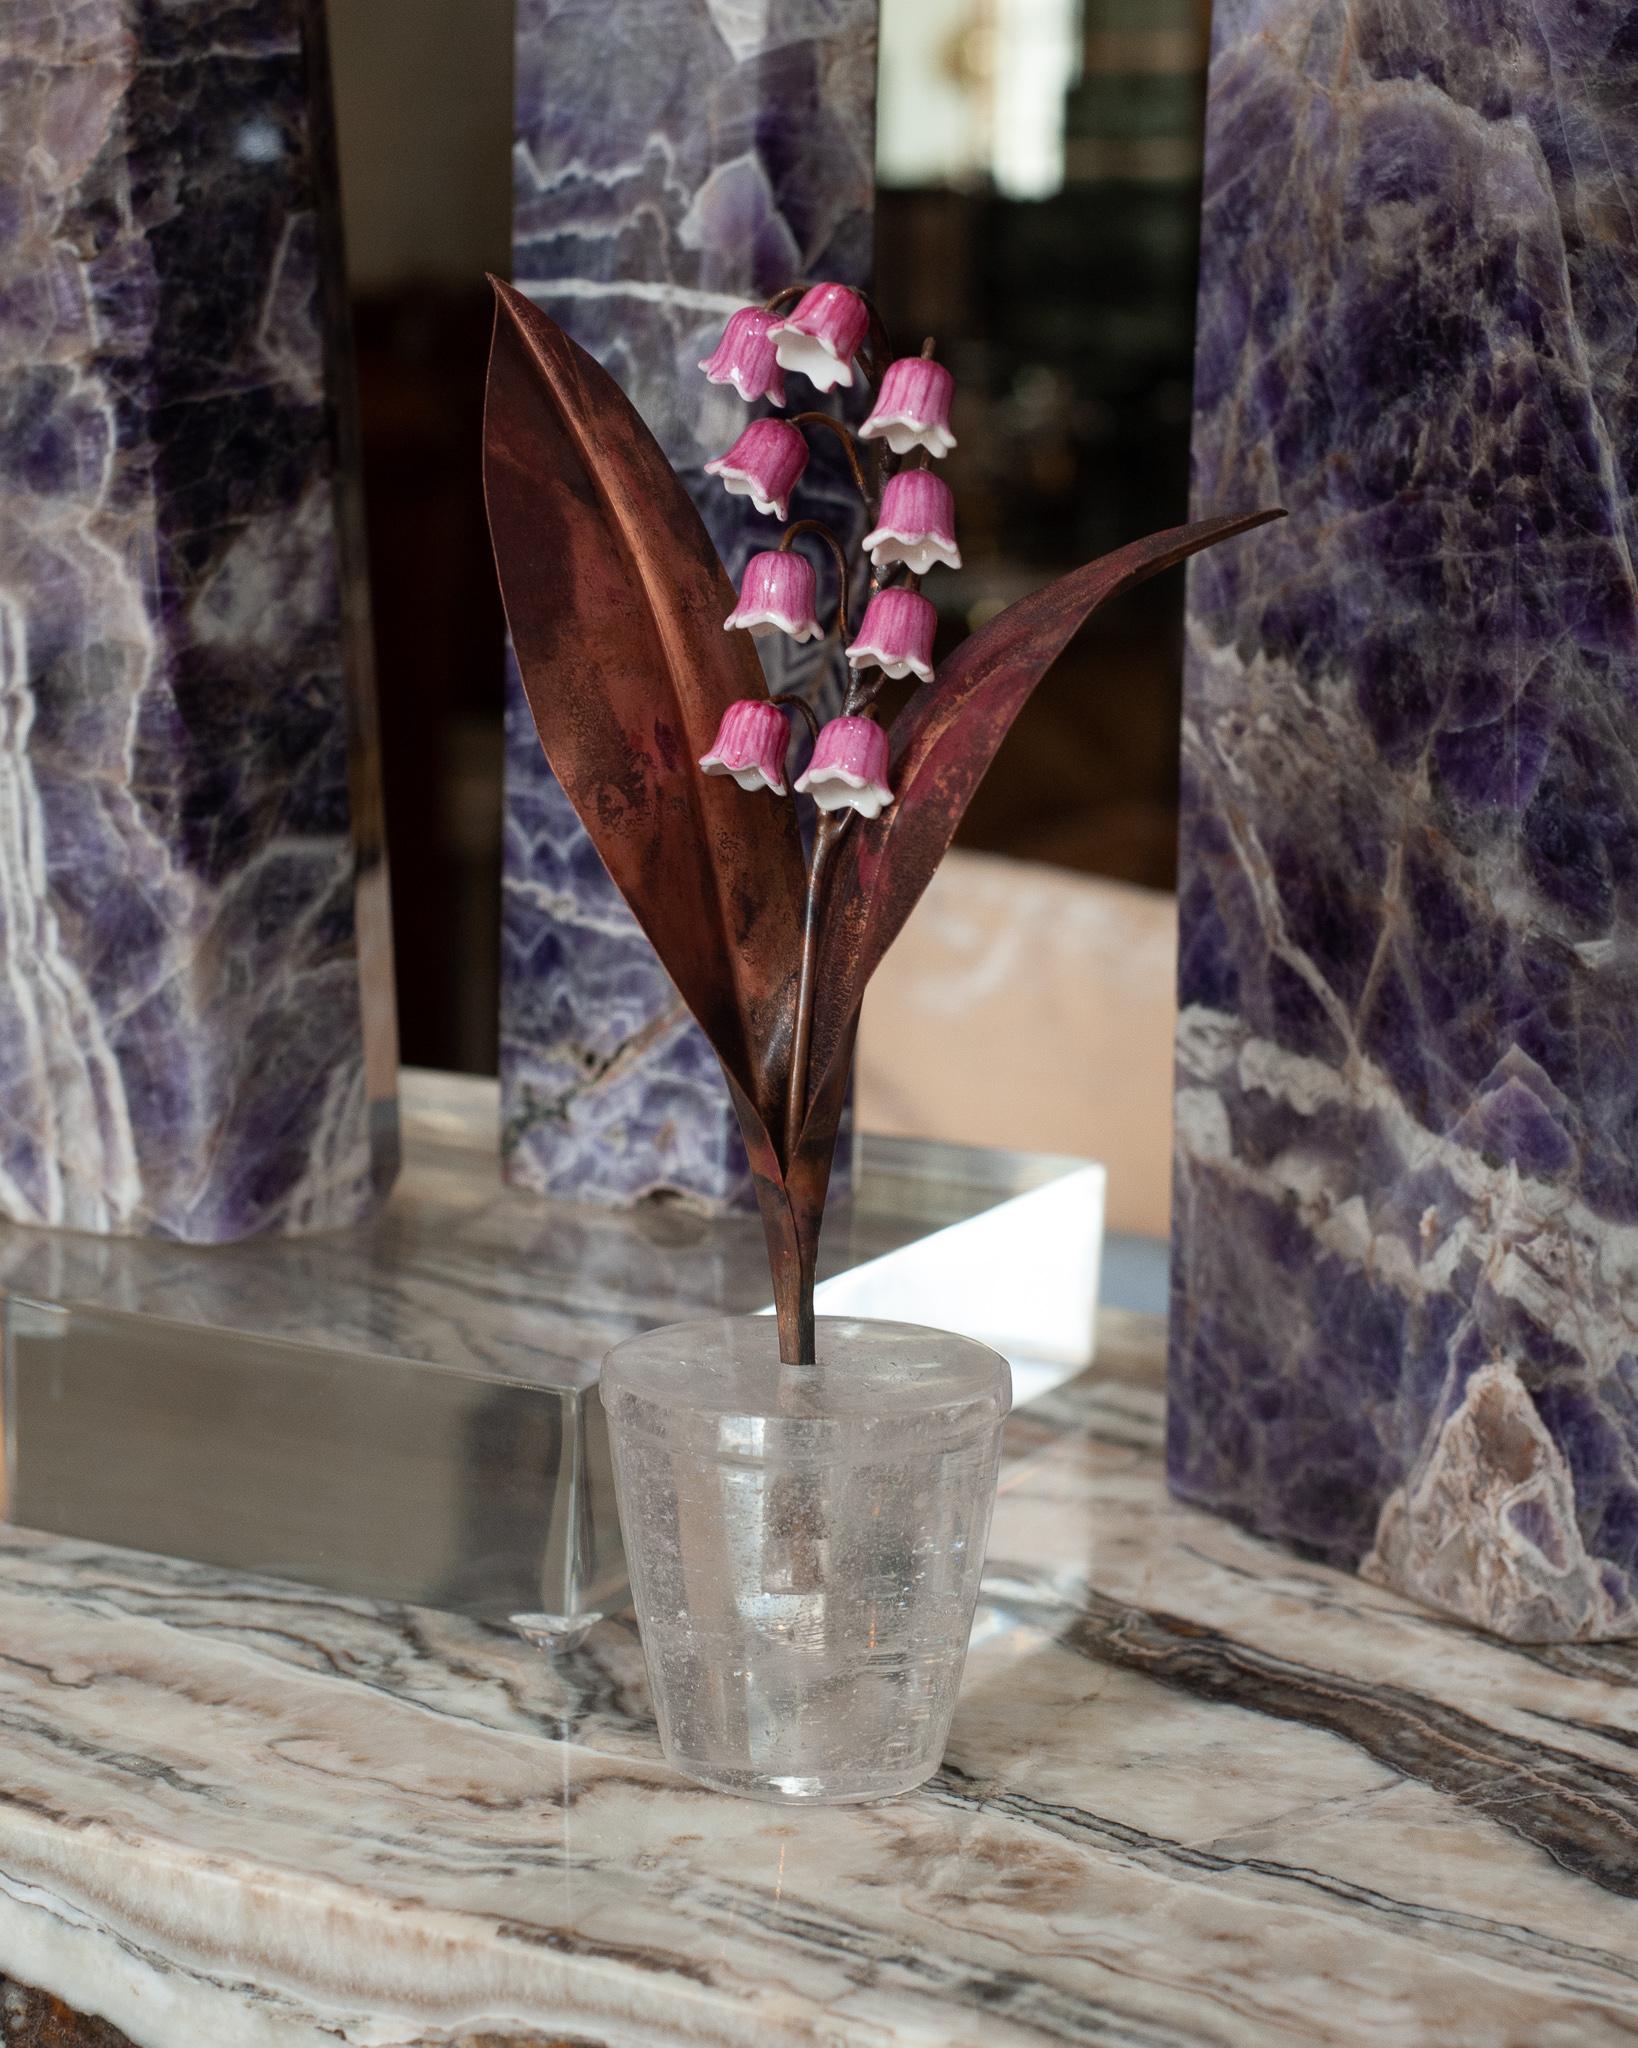 Verschönern Sie Ihren Tisch mit diesen zarten Porzellanblumen des französischen Künstlers Samuel Mazy in Zusammenarbeit mit Maison Nurita. Dieses Maiglöckchen ist handgefertigt aus Biskuitporzellan, glasiert in einem speziellen Rosa für Maison